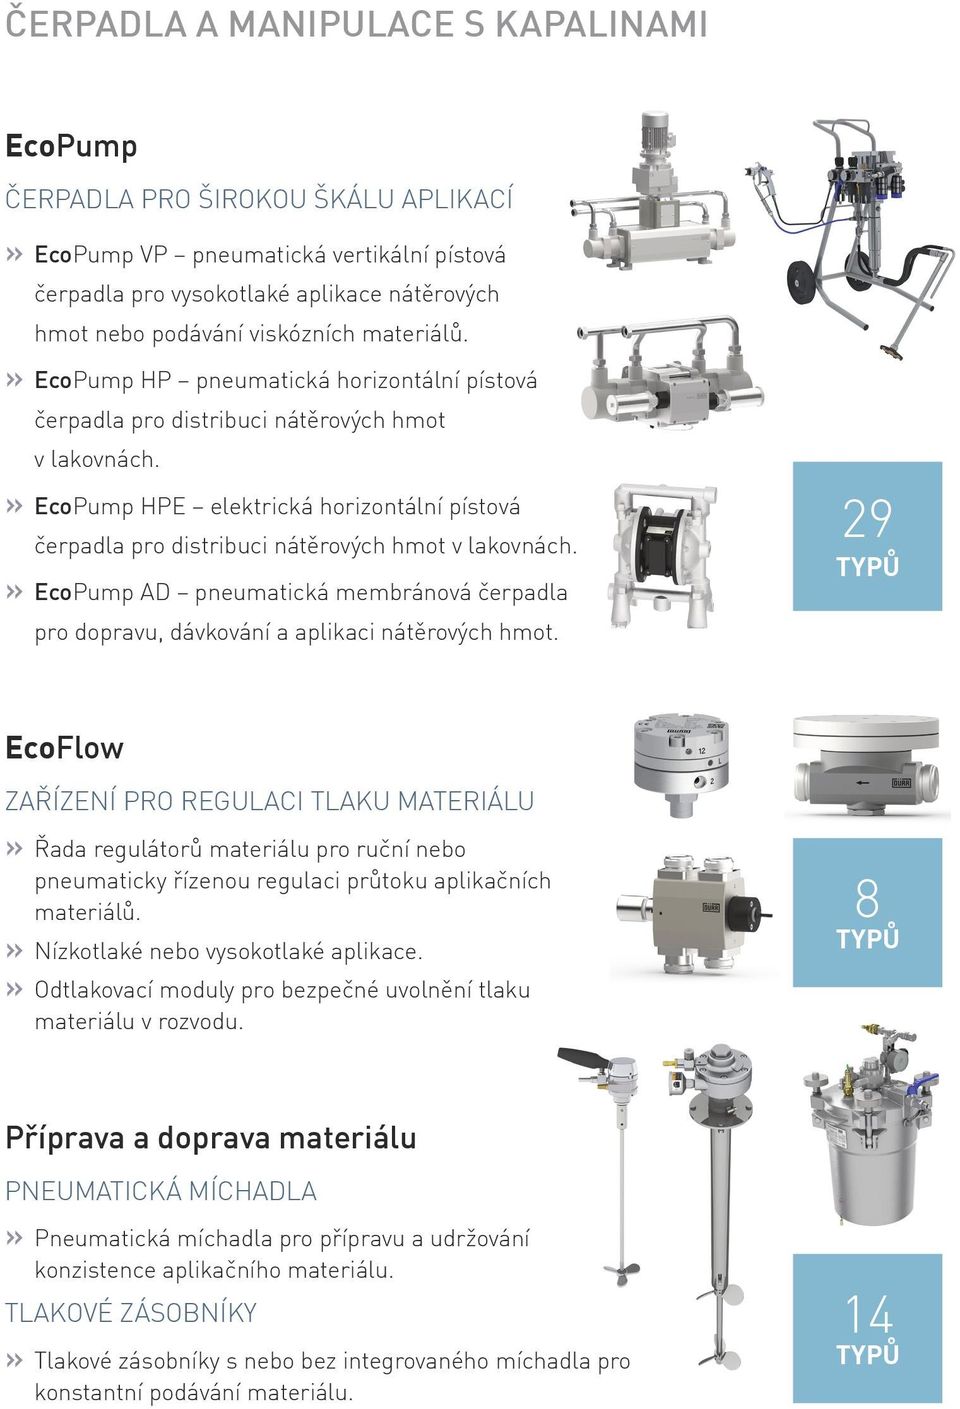 EcoPump HPE elektrická horizontální pístová čerpadla pro distribuci nátěrových hmot v lakovnách. EcoPump AD pneumatická membránová čerpadla pro dopravu, dávkování a aplikaci nátěrových hmot.